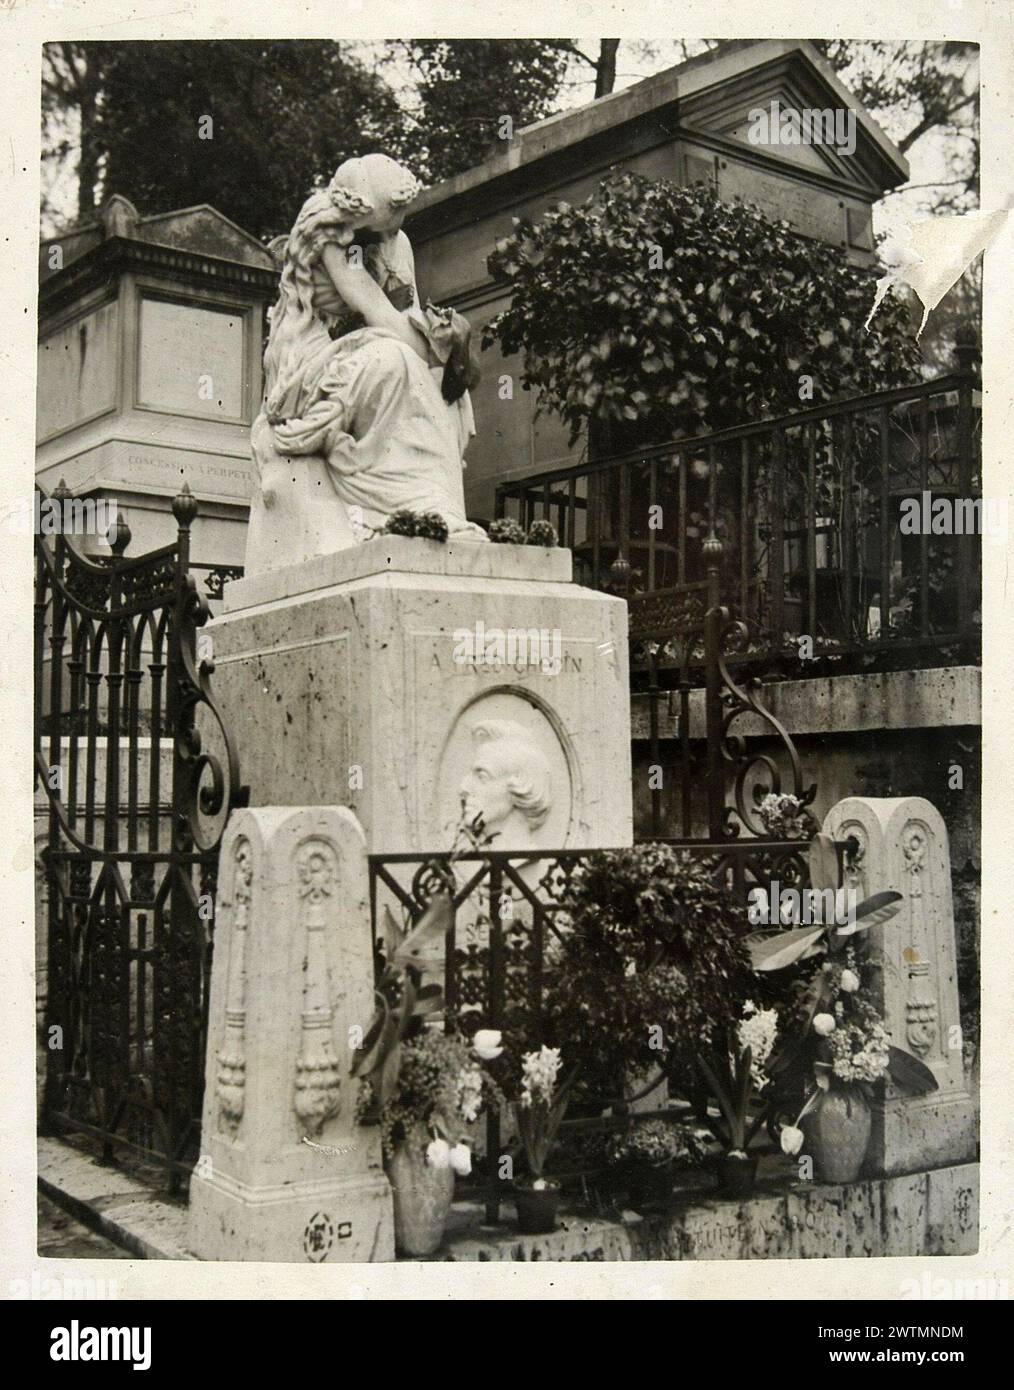 Photo vintage en noir et blanc du tombeau du compositeur polonais Frédéric Chopin au cimetière du Père Lachaise, Paris, France Banque D'Images